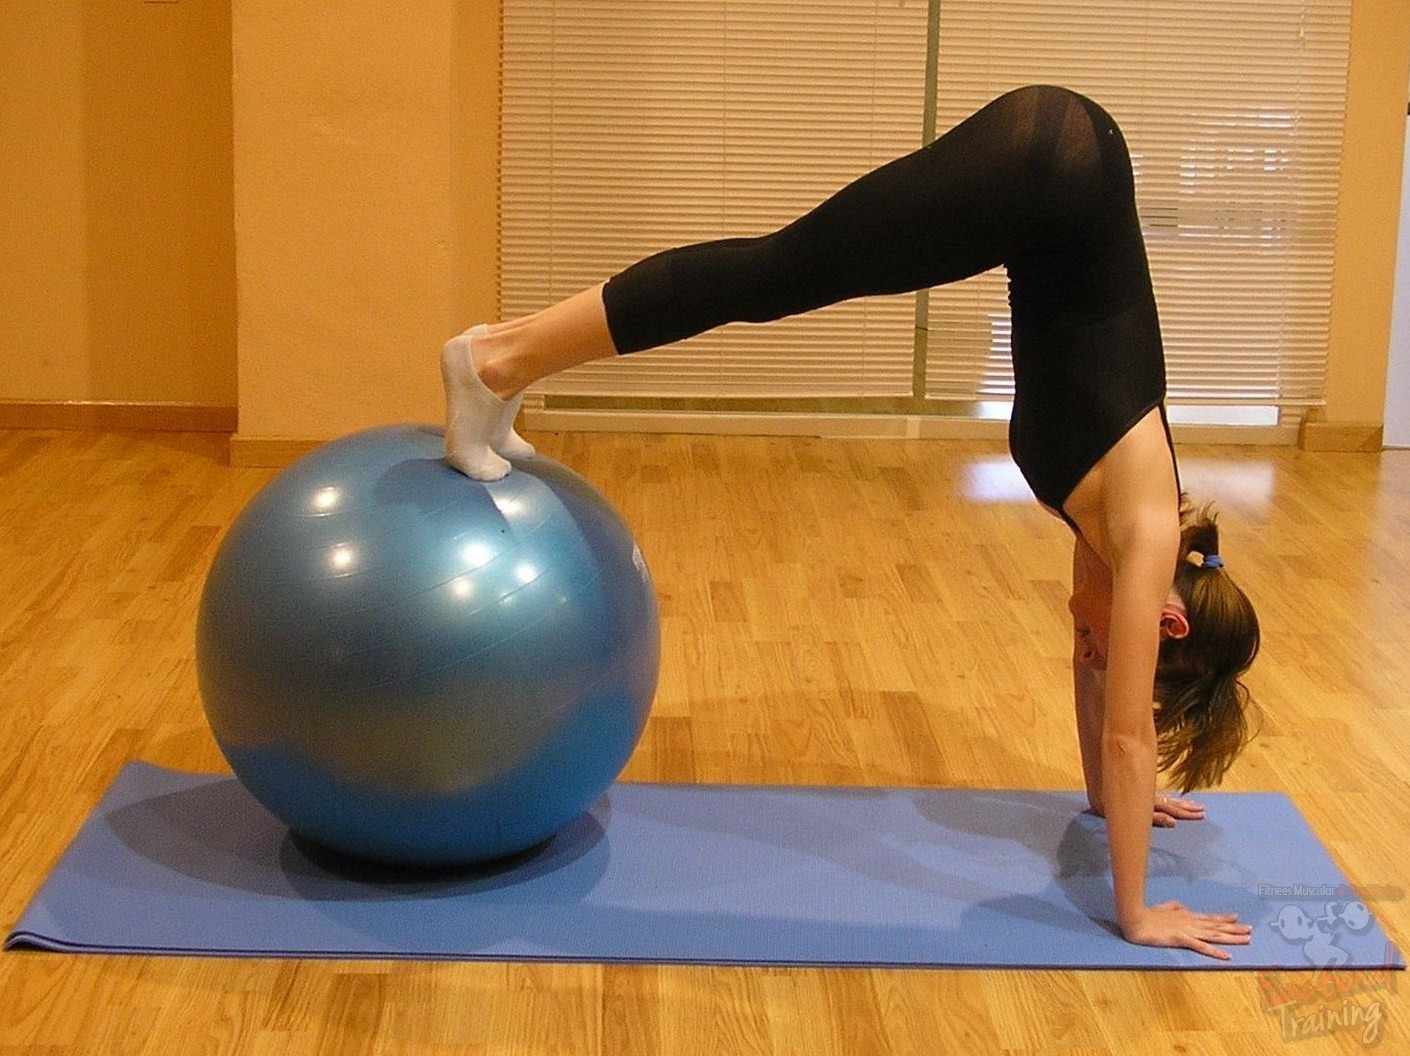 Pelota esfero gimnasia yoga pilates 85 cm -azul - GMP